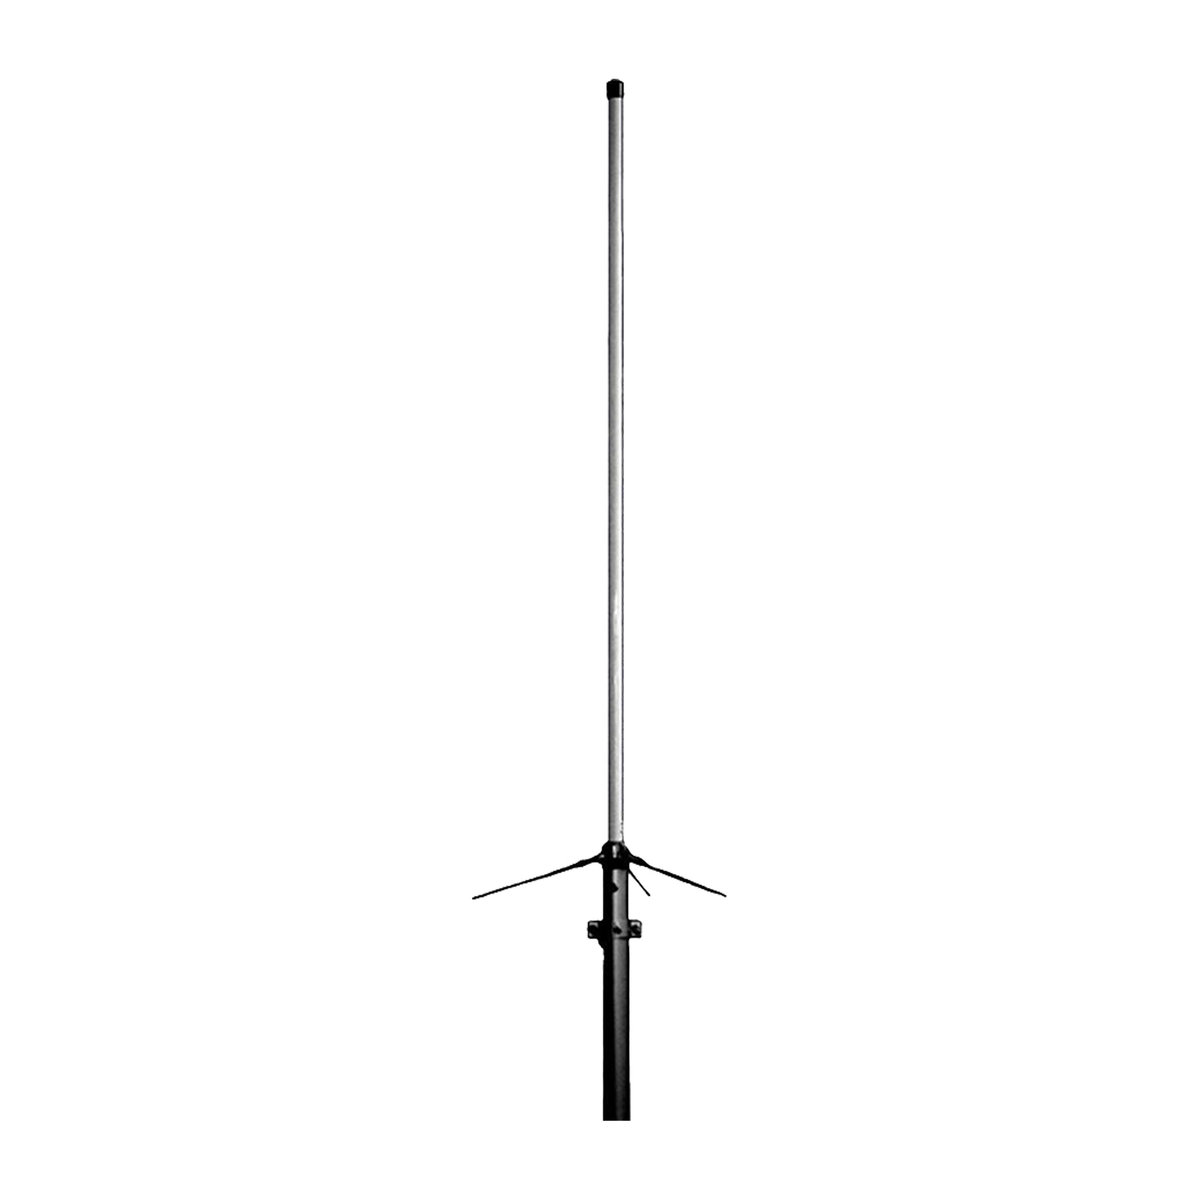 D-Original X-50NW - dwupasmowa antena stacjonarna o długości 1,7m na pasma 144 i 430 MHz